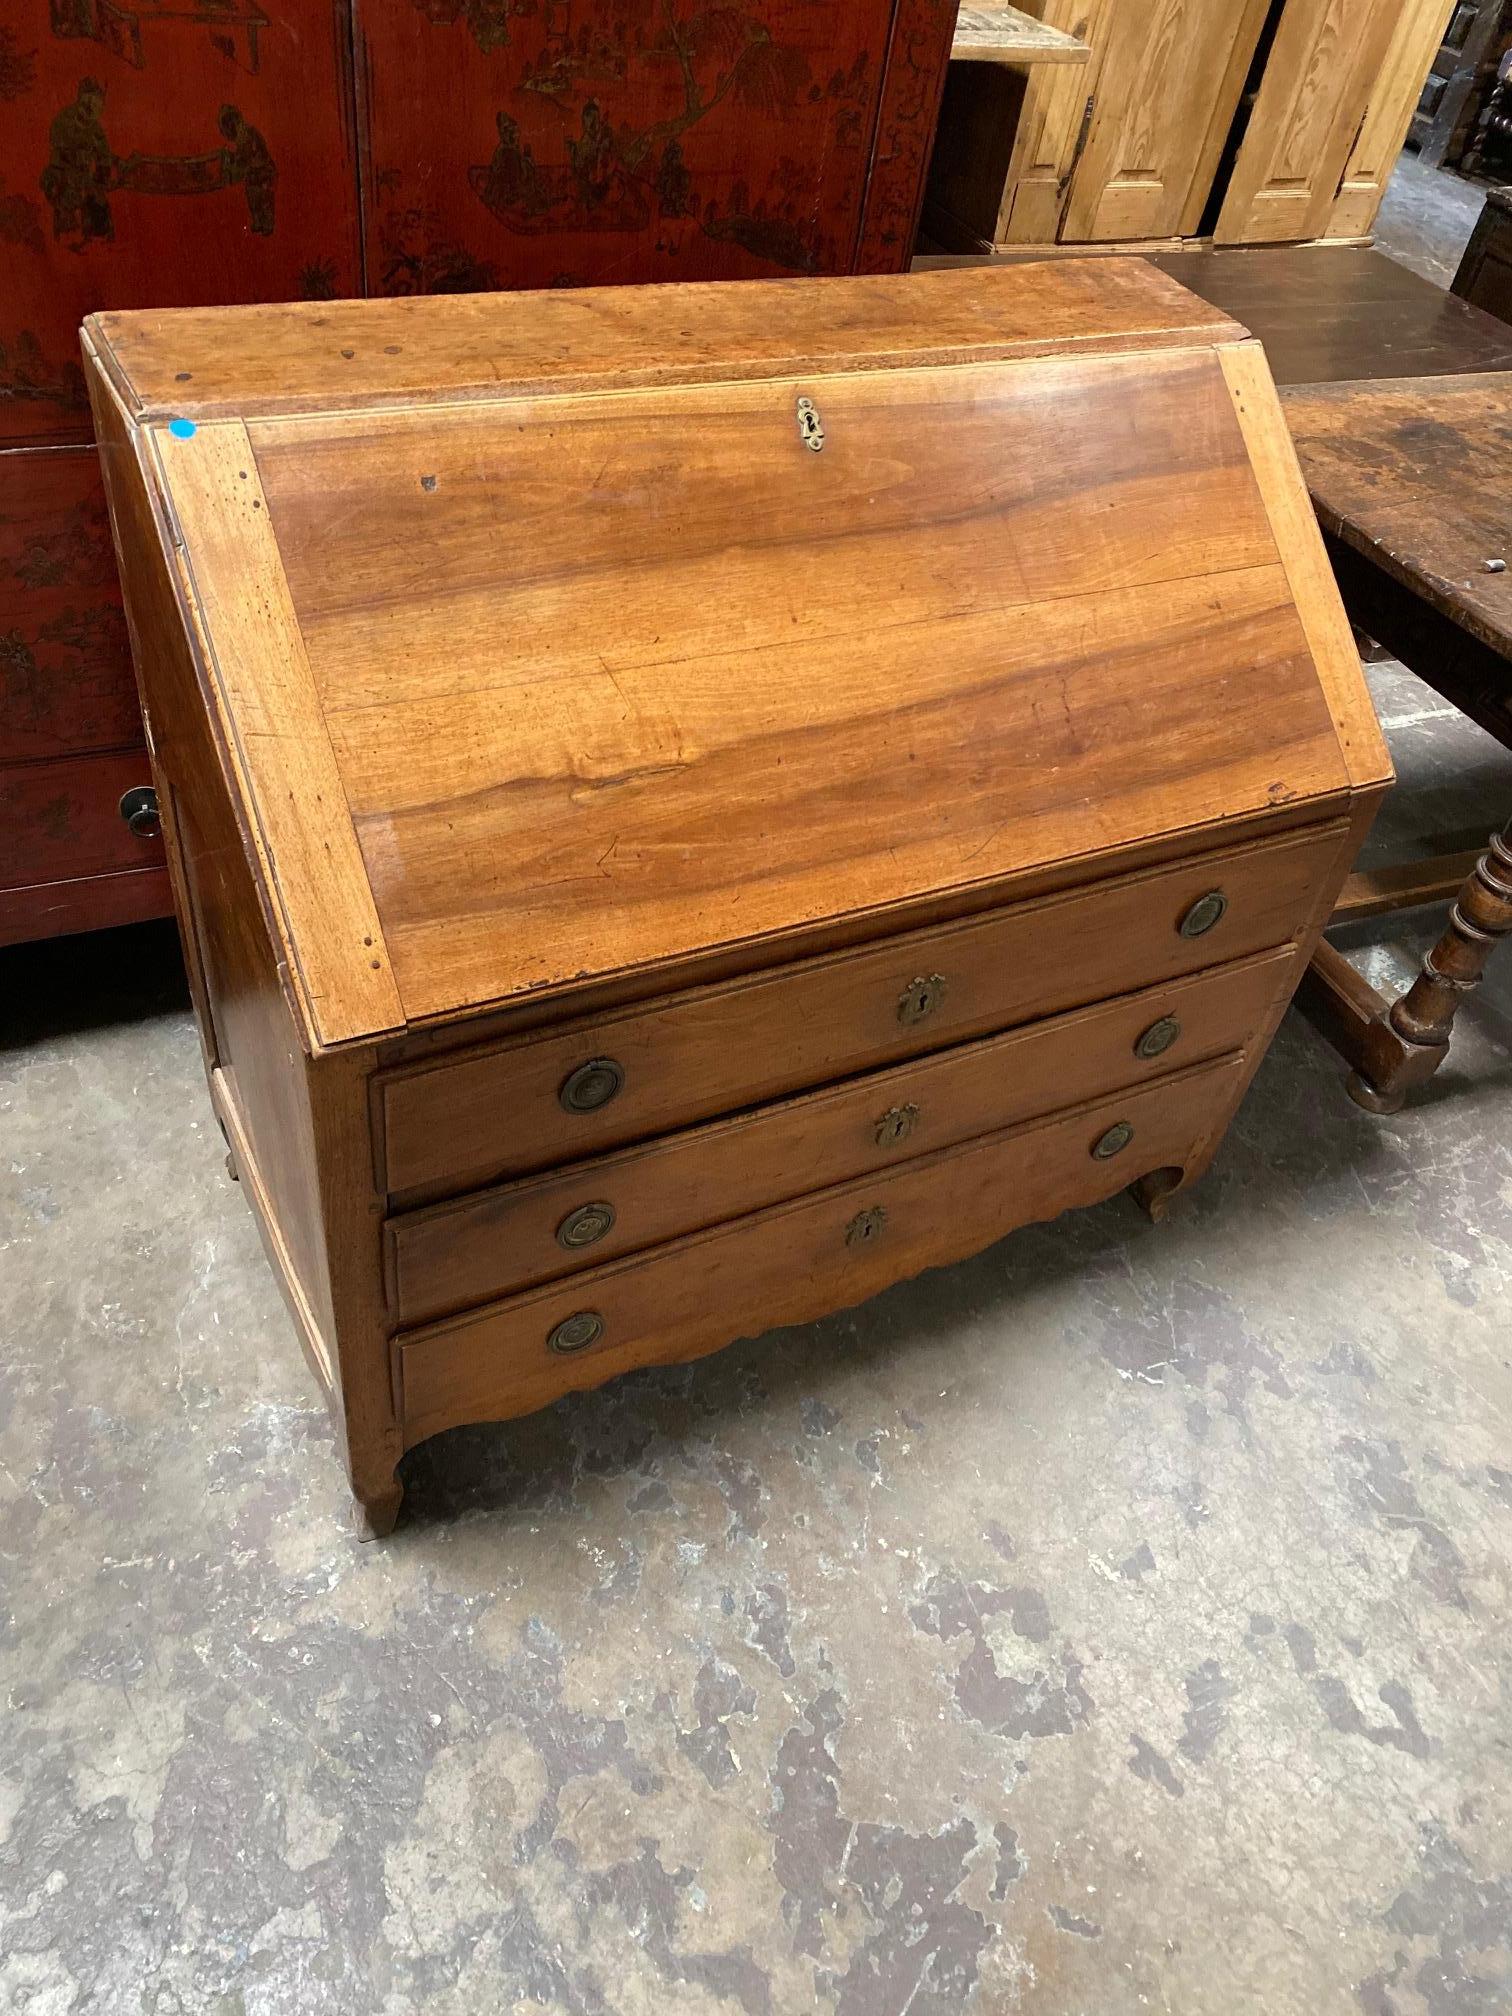 Dieser französische Schreibtisch ist aus Nussbaumholz gefertigt und stammt aus dem Jahr 1800. 

Abmessungen: 44